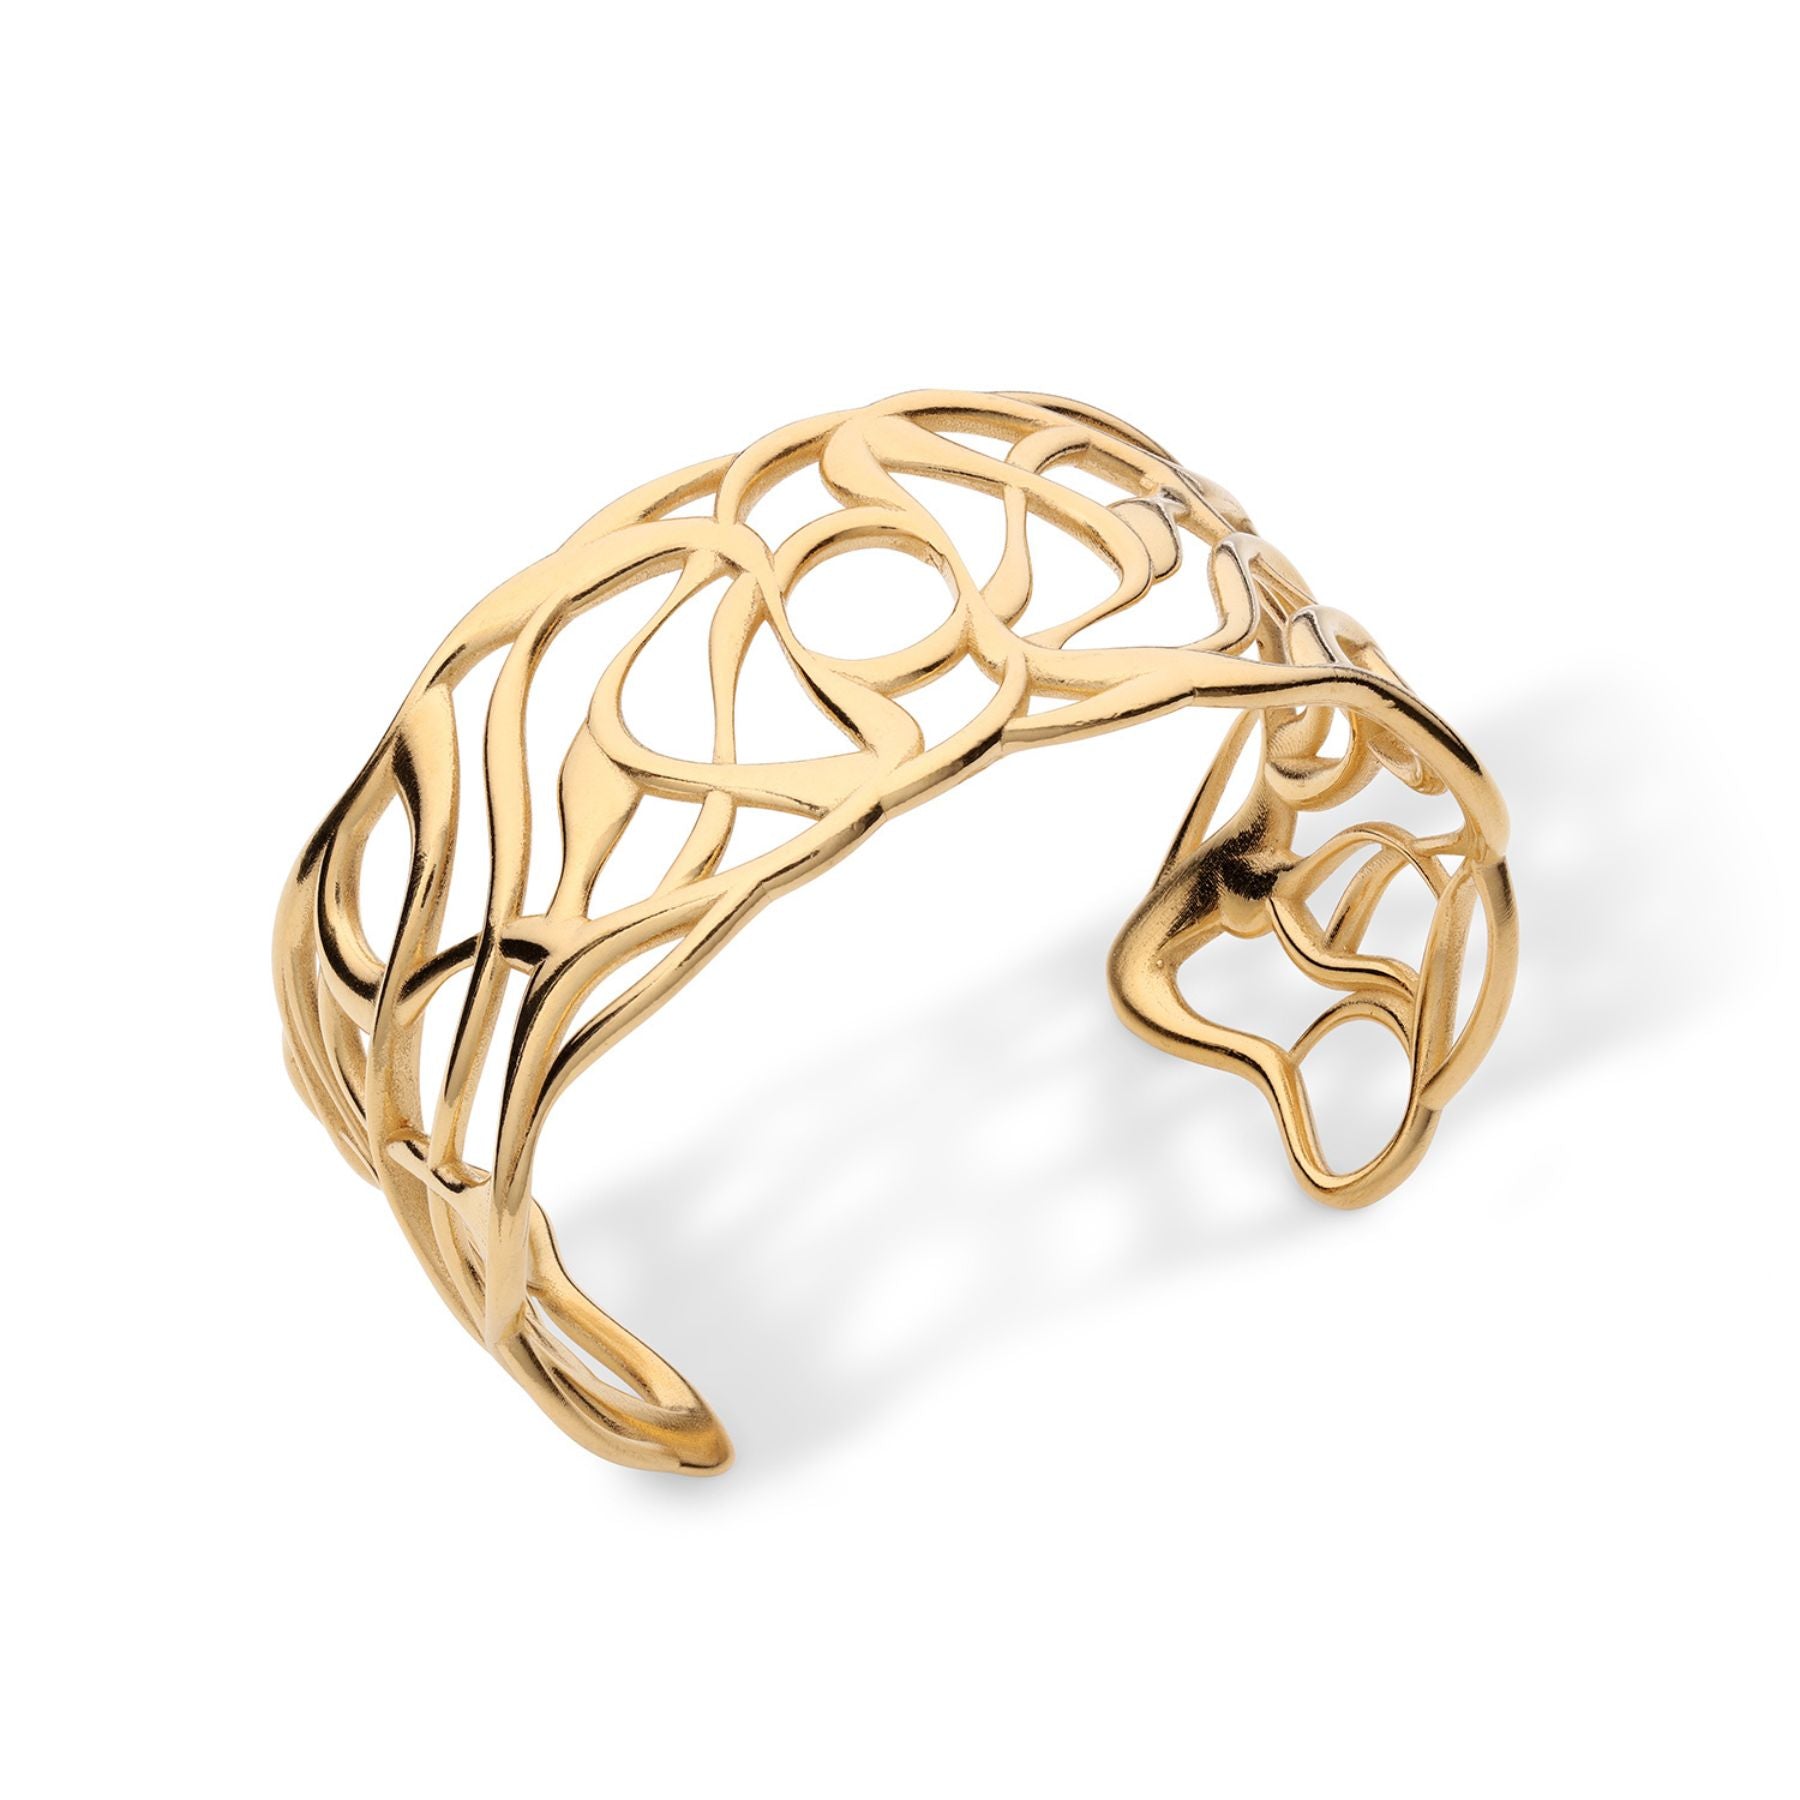 Elegantly fluid cuff bracelet in 18k gold vermeil.